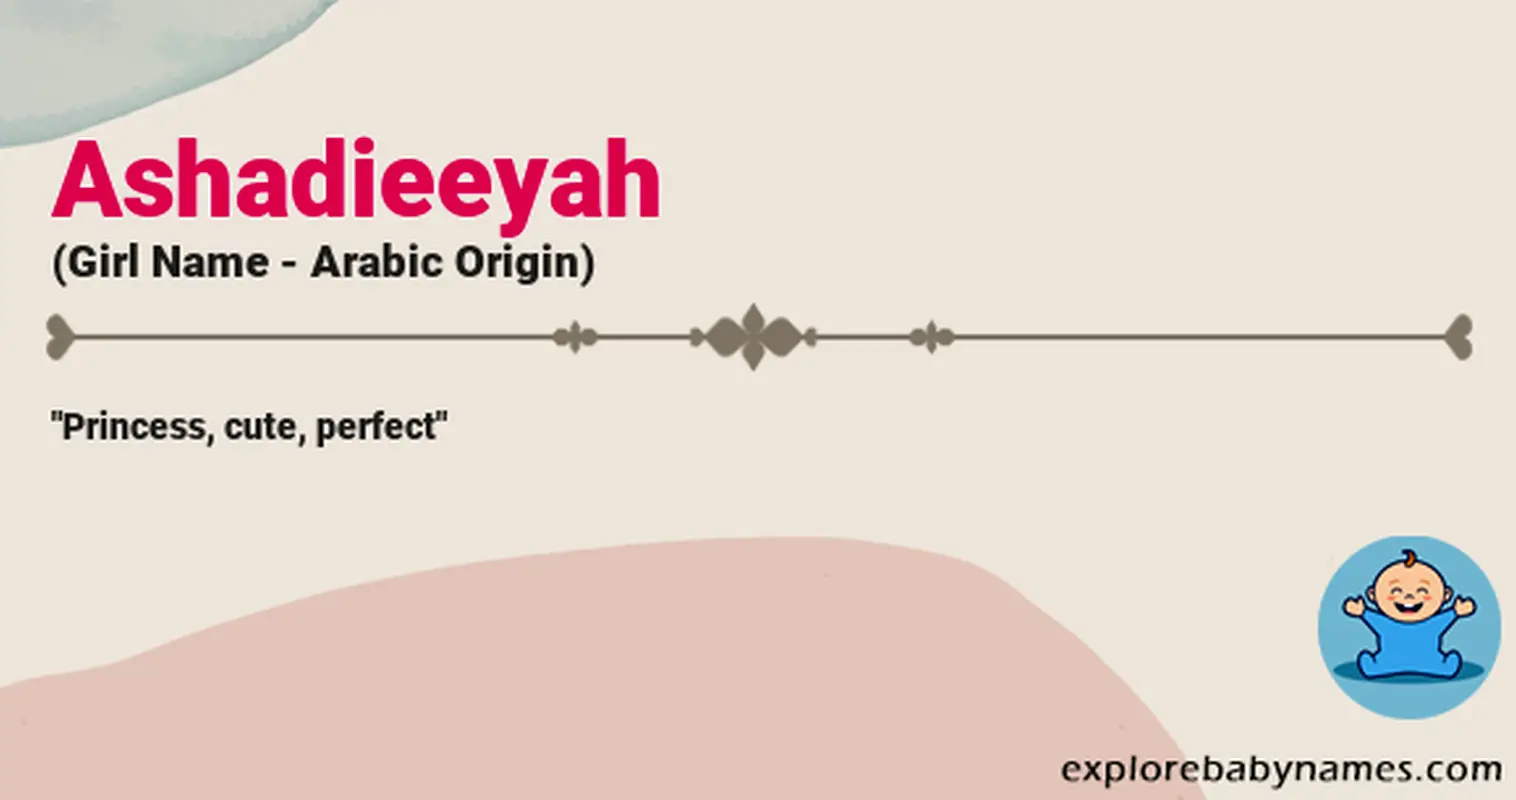 Meaning of Ashadieeyah